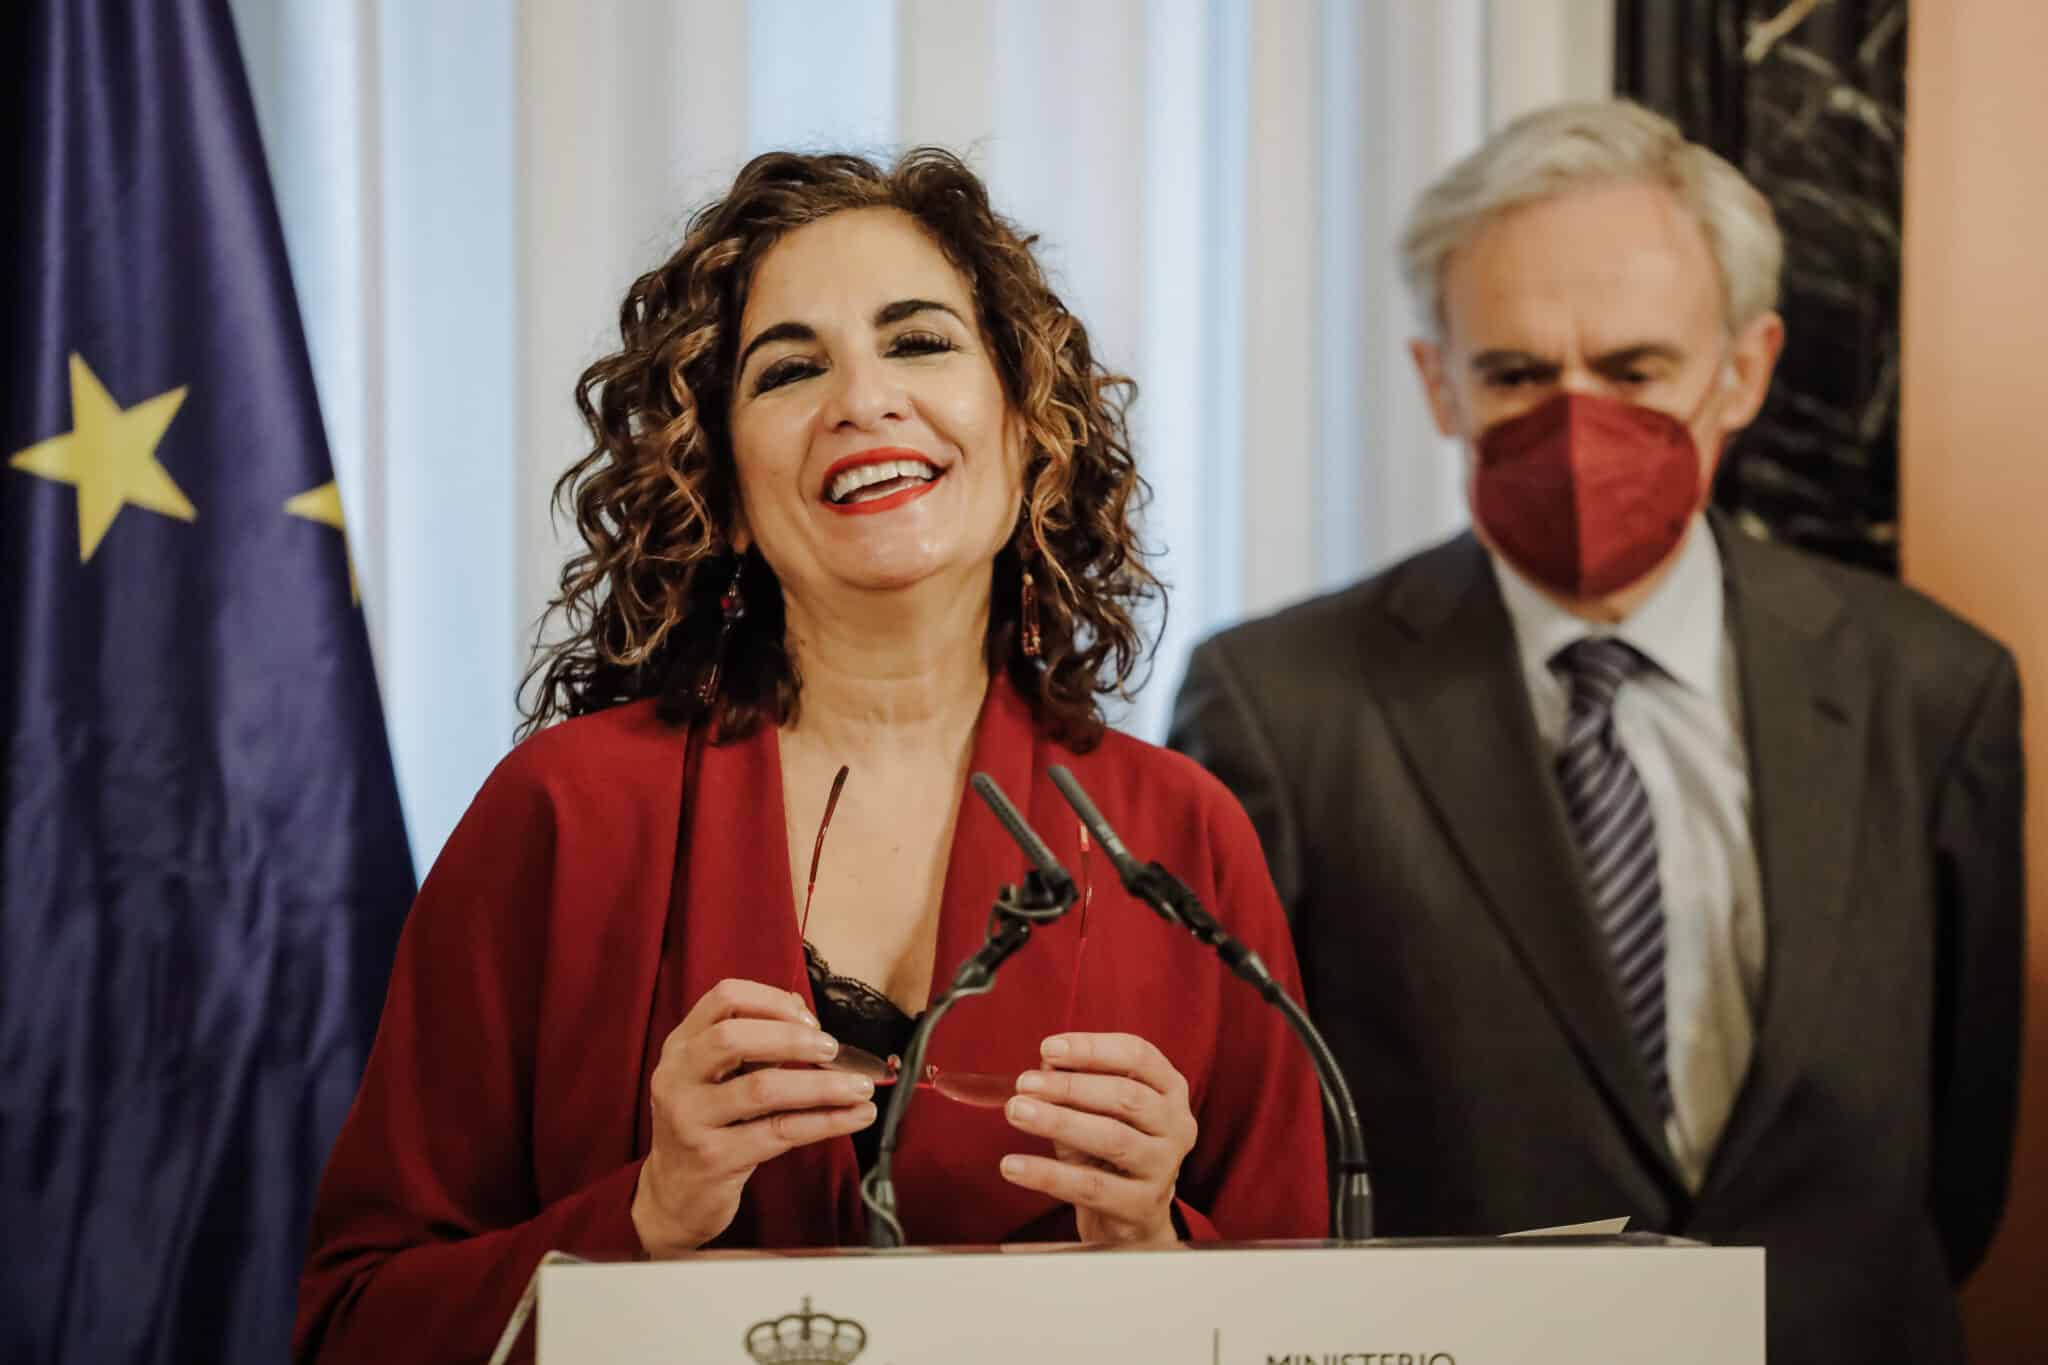 La ministra de Hacienda, María Jesús Montero, interviene en el acto en el que ha recibido el Libro Blanco del comité de personas expertas para la reforma del sistema tributario